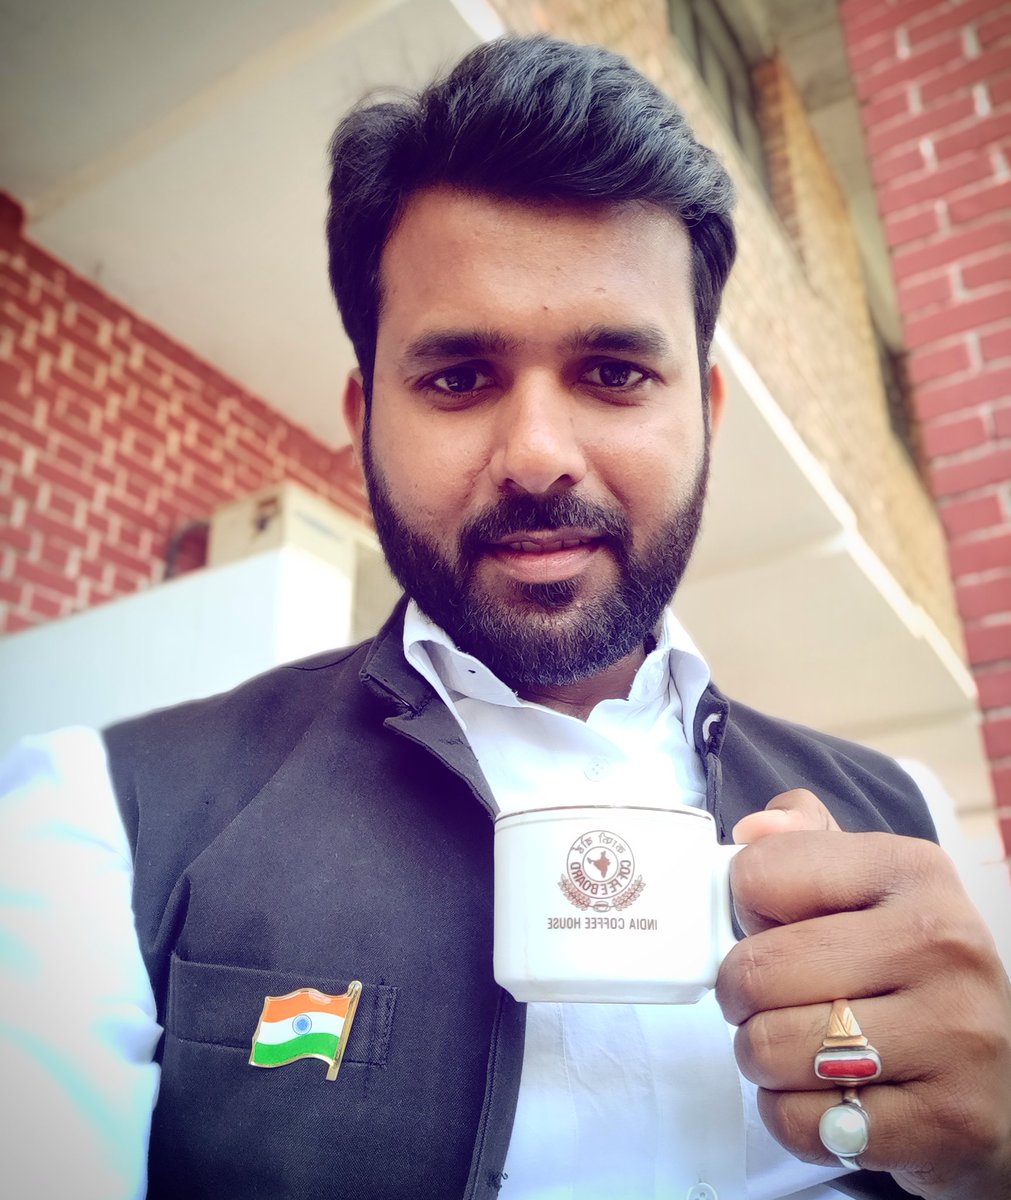 हम ✋
जिन्हें नाज़ है अपने हिन्द 🇮🇳 पर!

जय भारत 🙏

#indianflag #coffee #jnu #selﬁe #indiancoffeehouse #revitalize